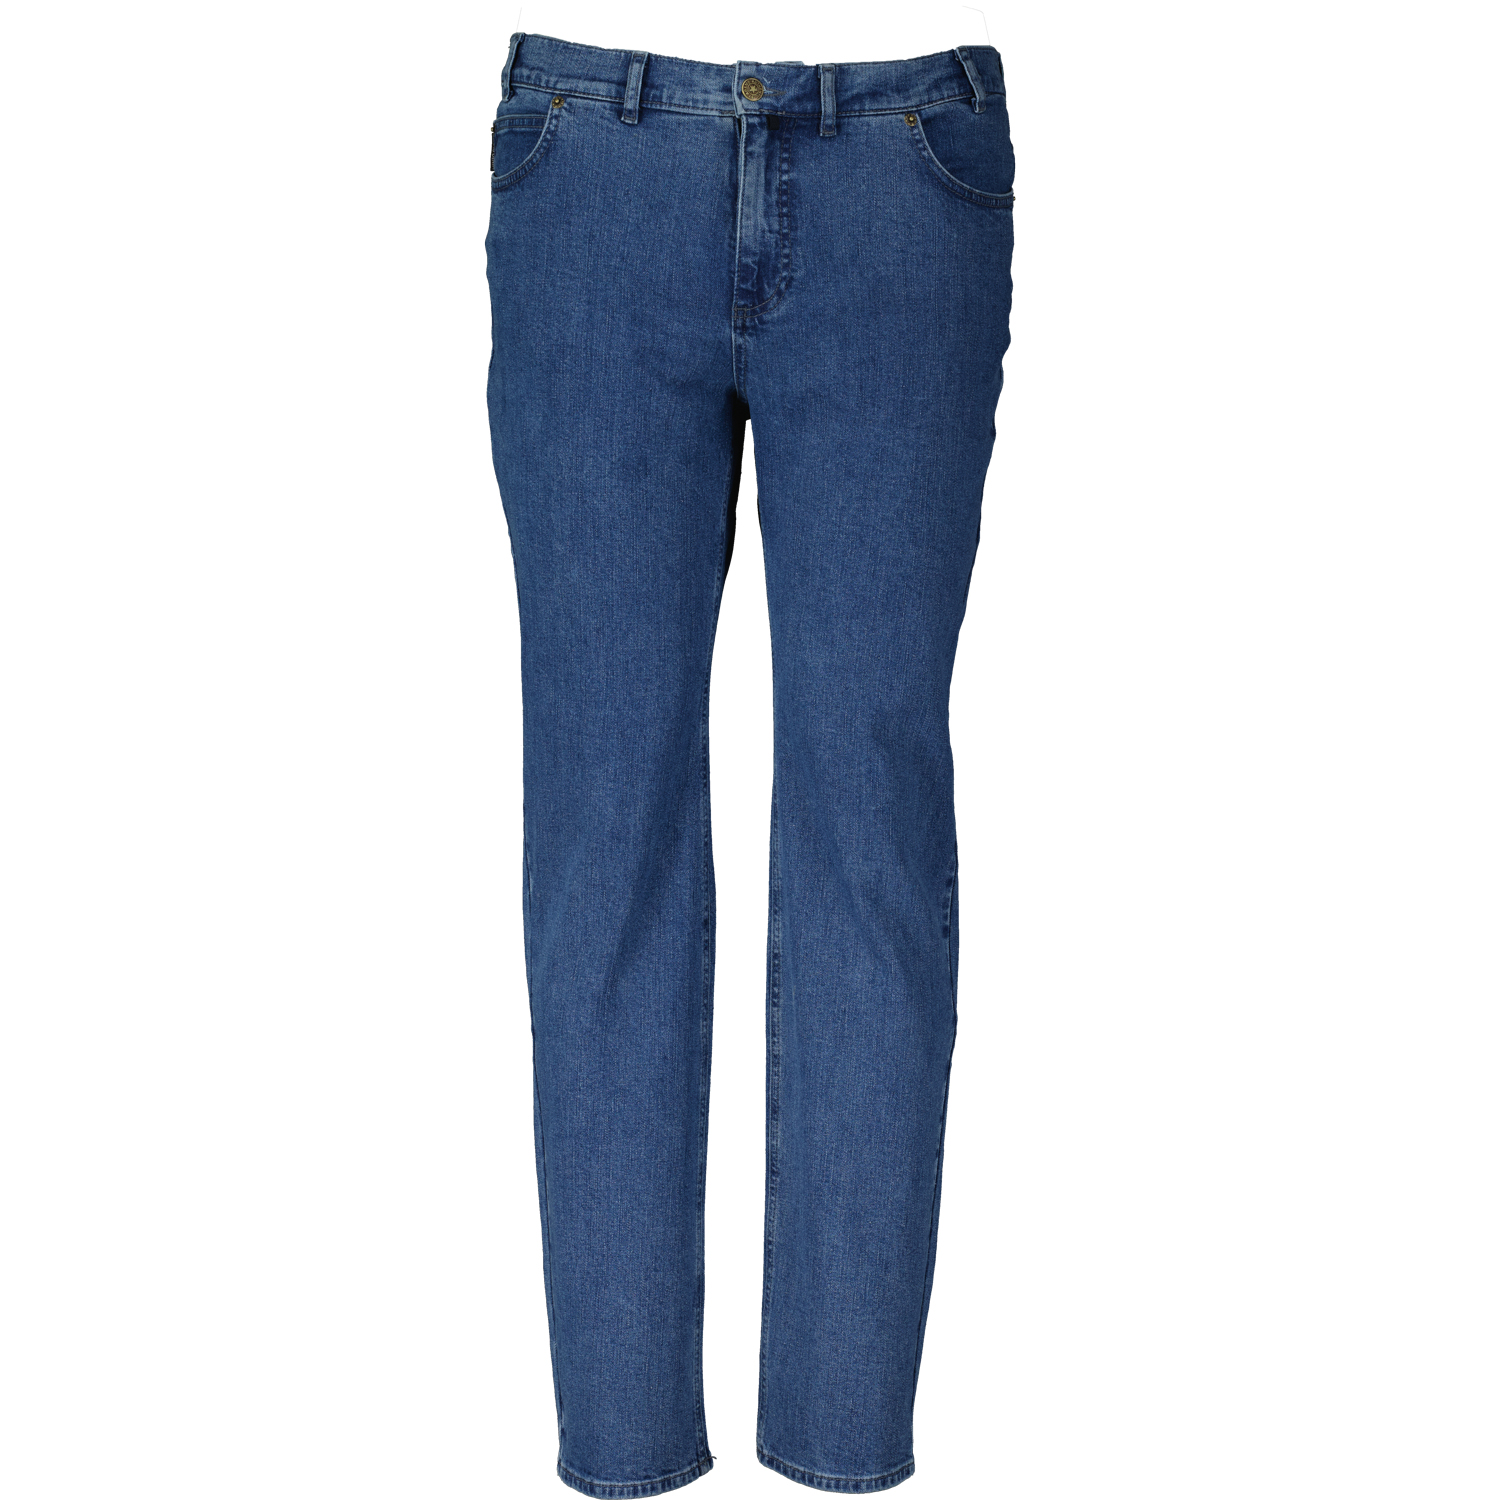 ADAMO 5-Pocket Jeans lang mit Stretch in mittelblau für Herren Serie "NEVADA" in Übergrößen 56 - 80